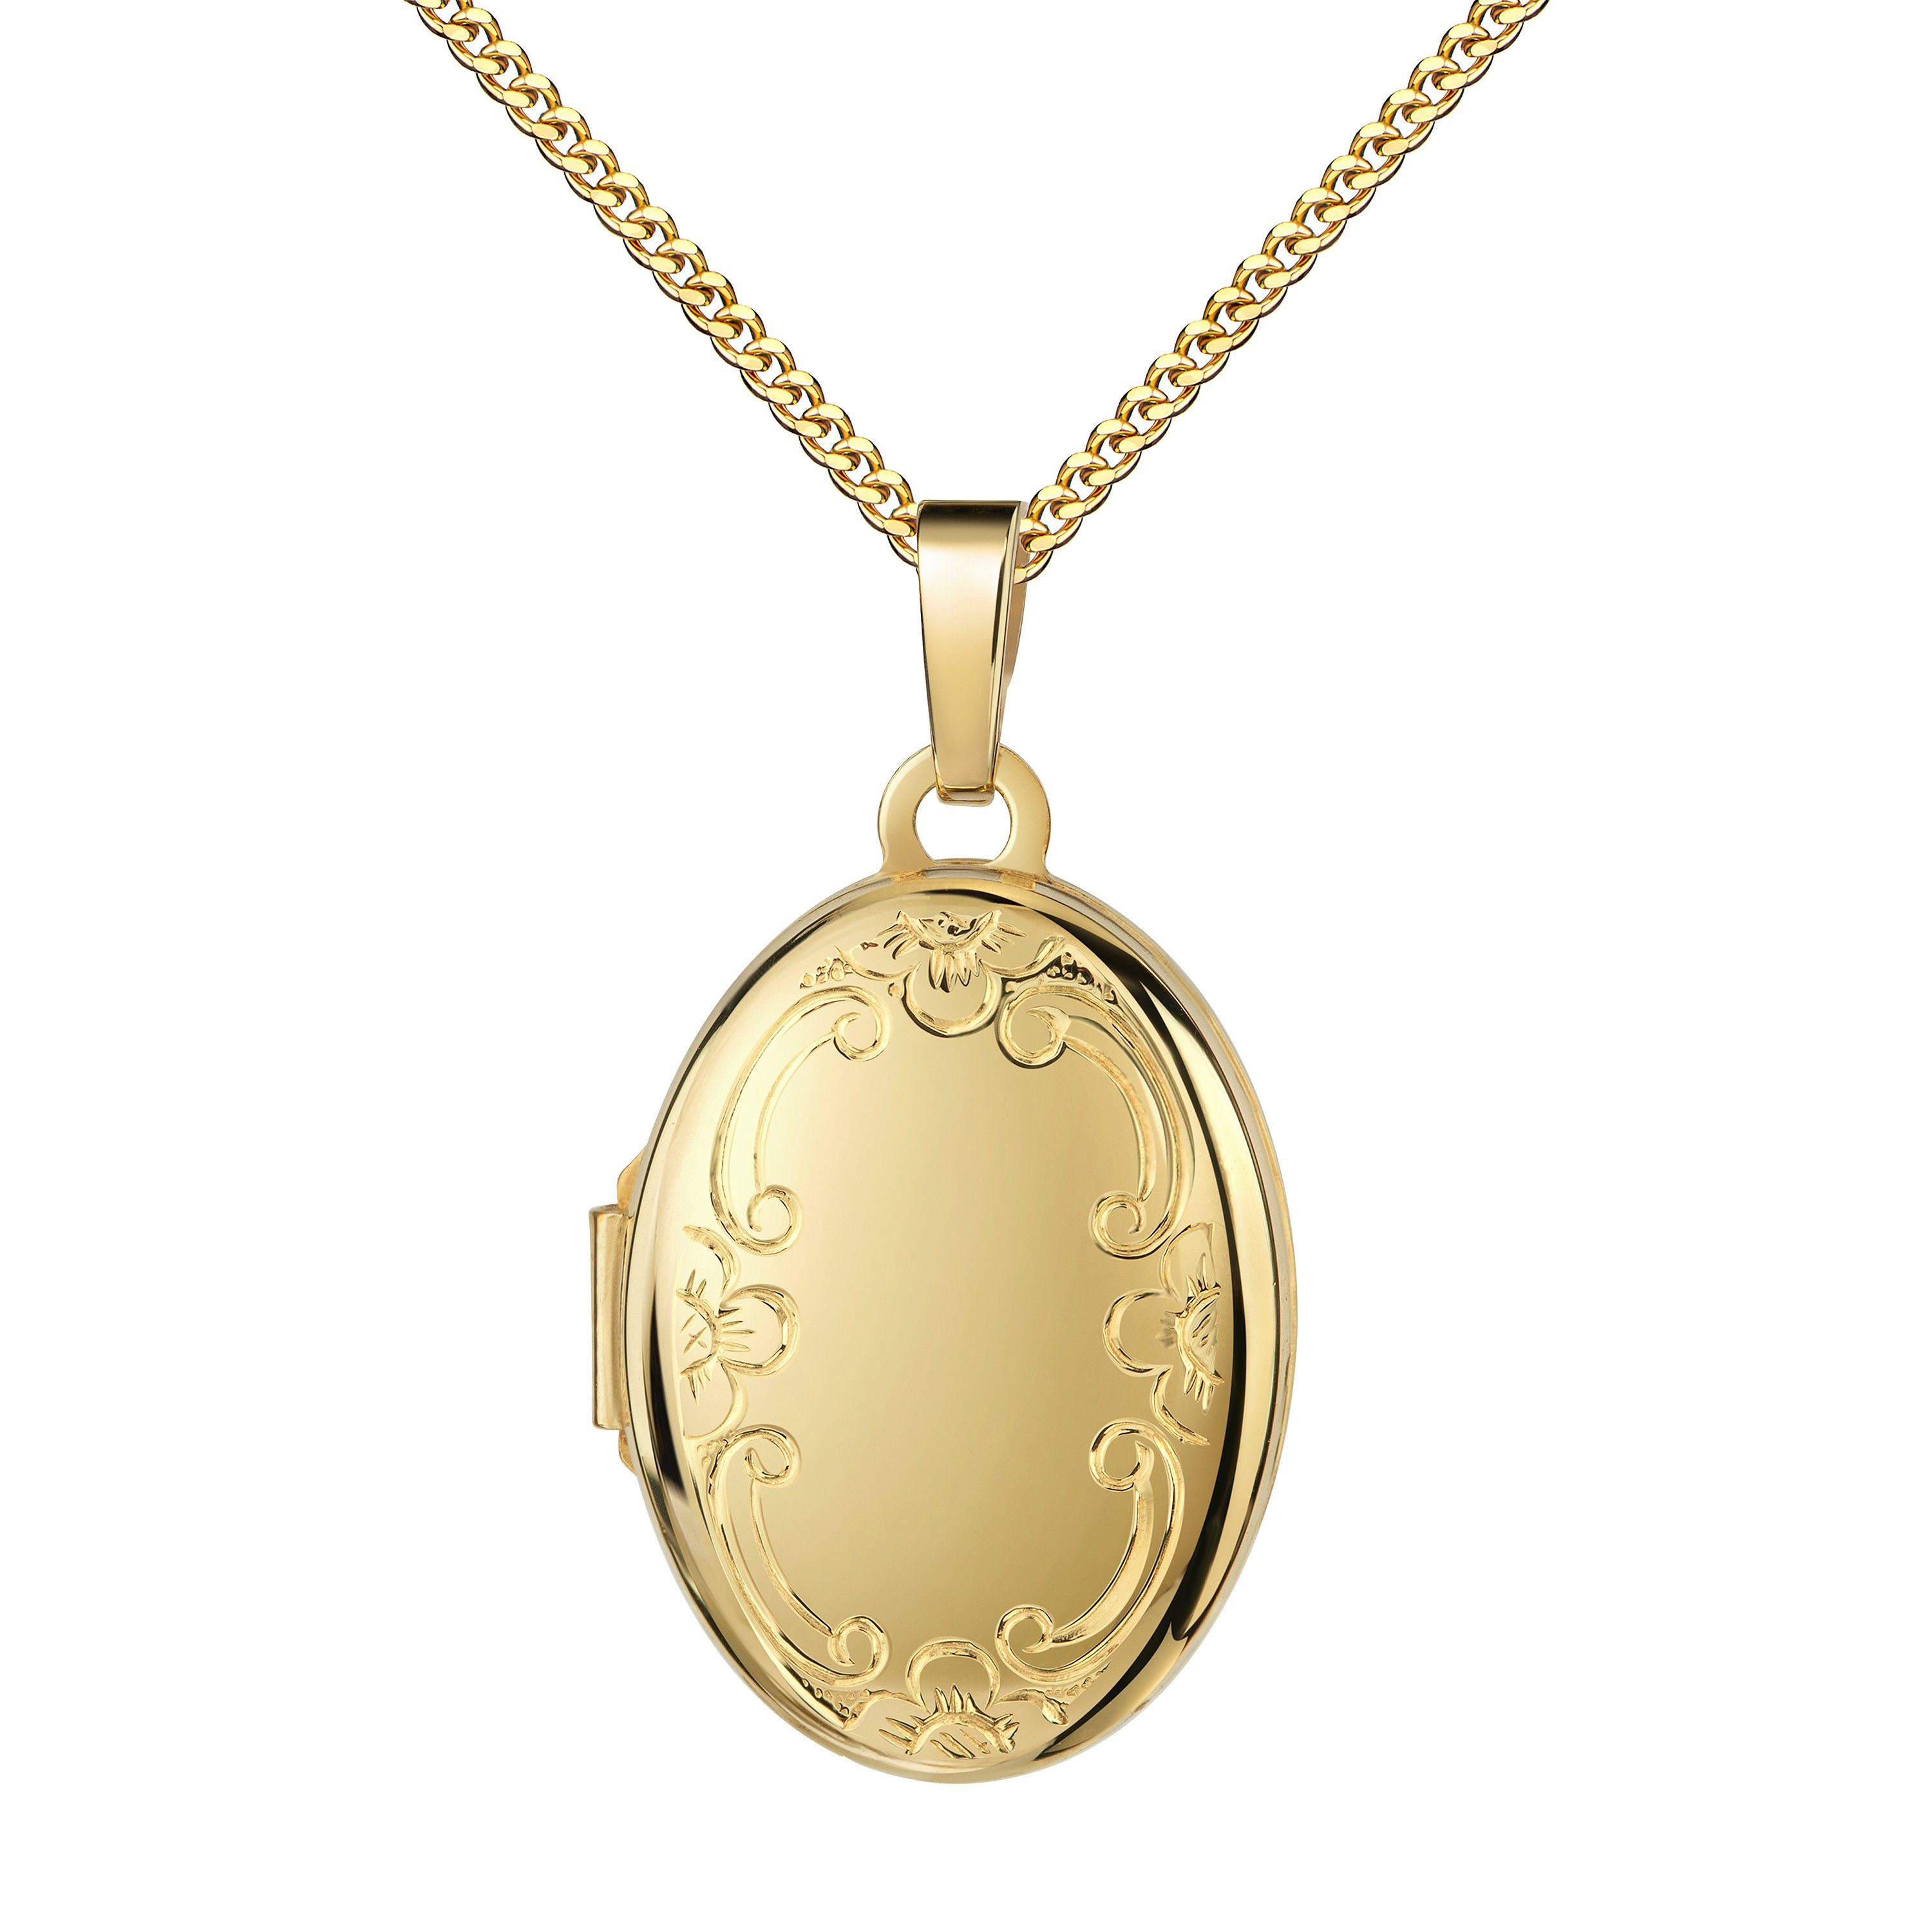 JEVELION Kettenanhänger Medaillon Gold 585 aufklappbar oval Ornament-Verzierung Anhänger (Gold Amulett, für Damen und Mädchen), Mit Kette vergoldet - Länge wählbar 36 - 70 cm oder ohne Kette.